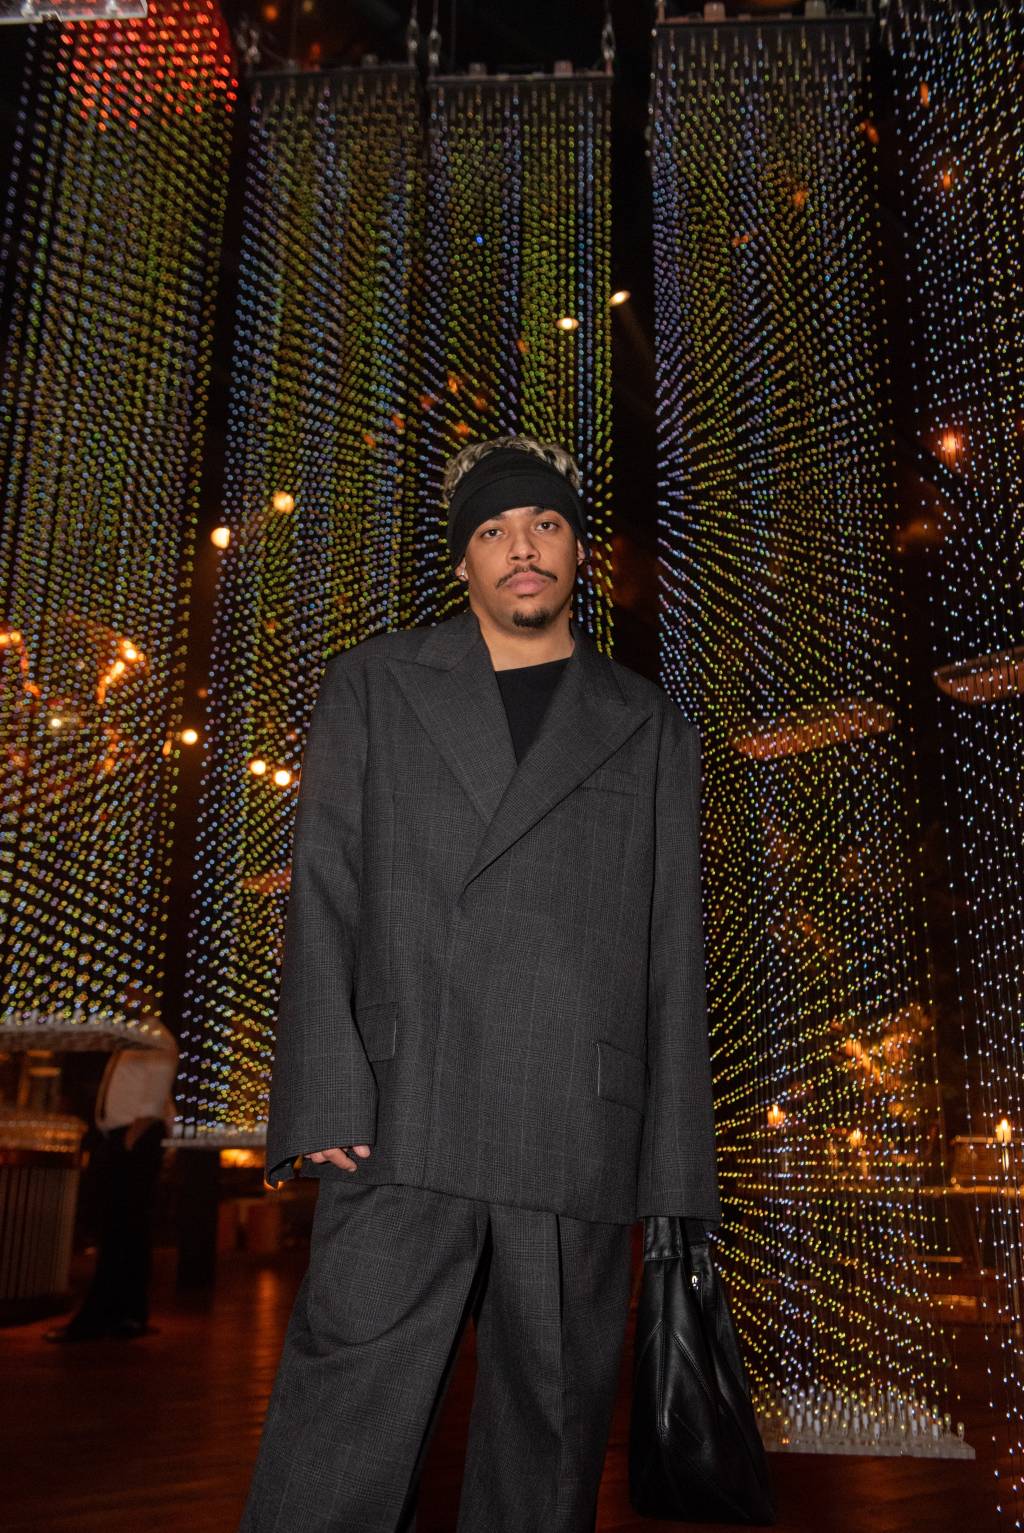 Homem negro posa em frente a instalação de brilhantes suspensos e luminosos. Veste calça preta, blazer oversized preto e faixa preta na cabeça.